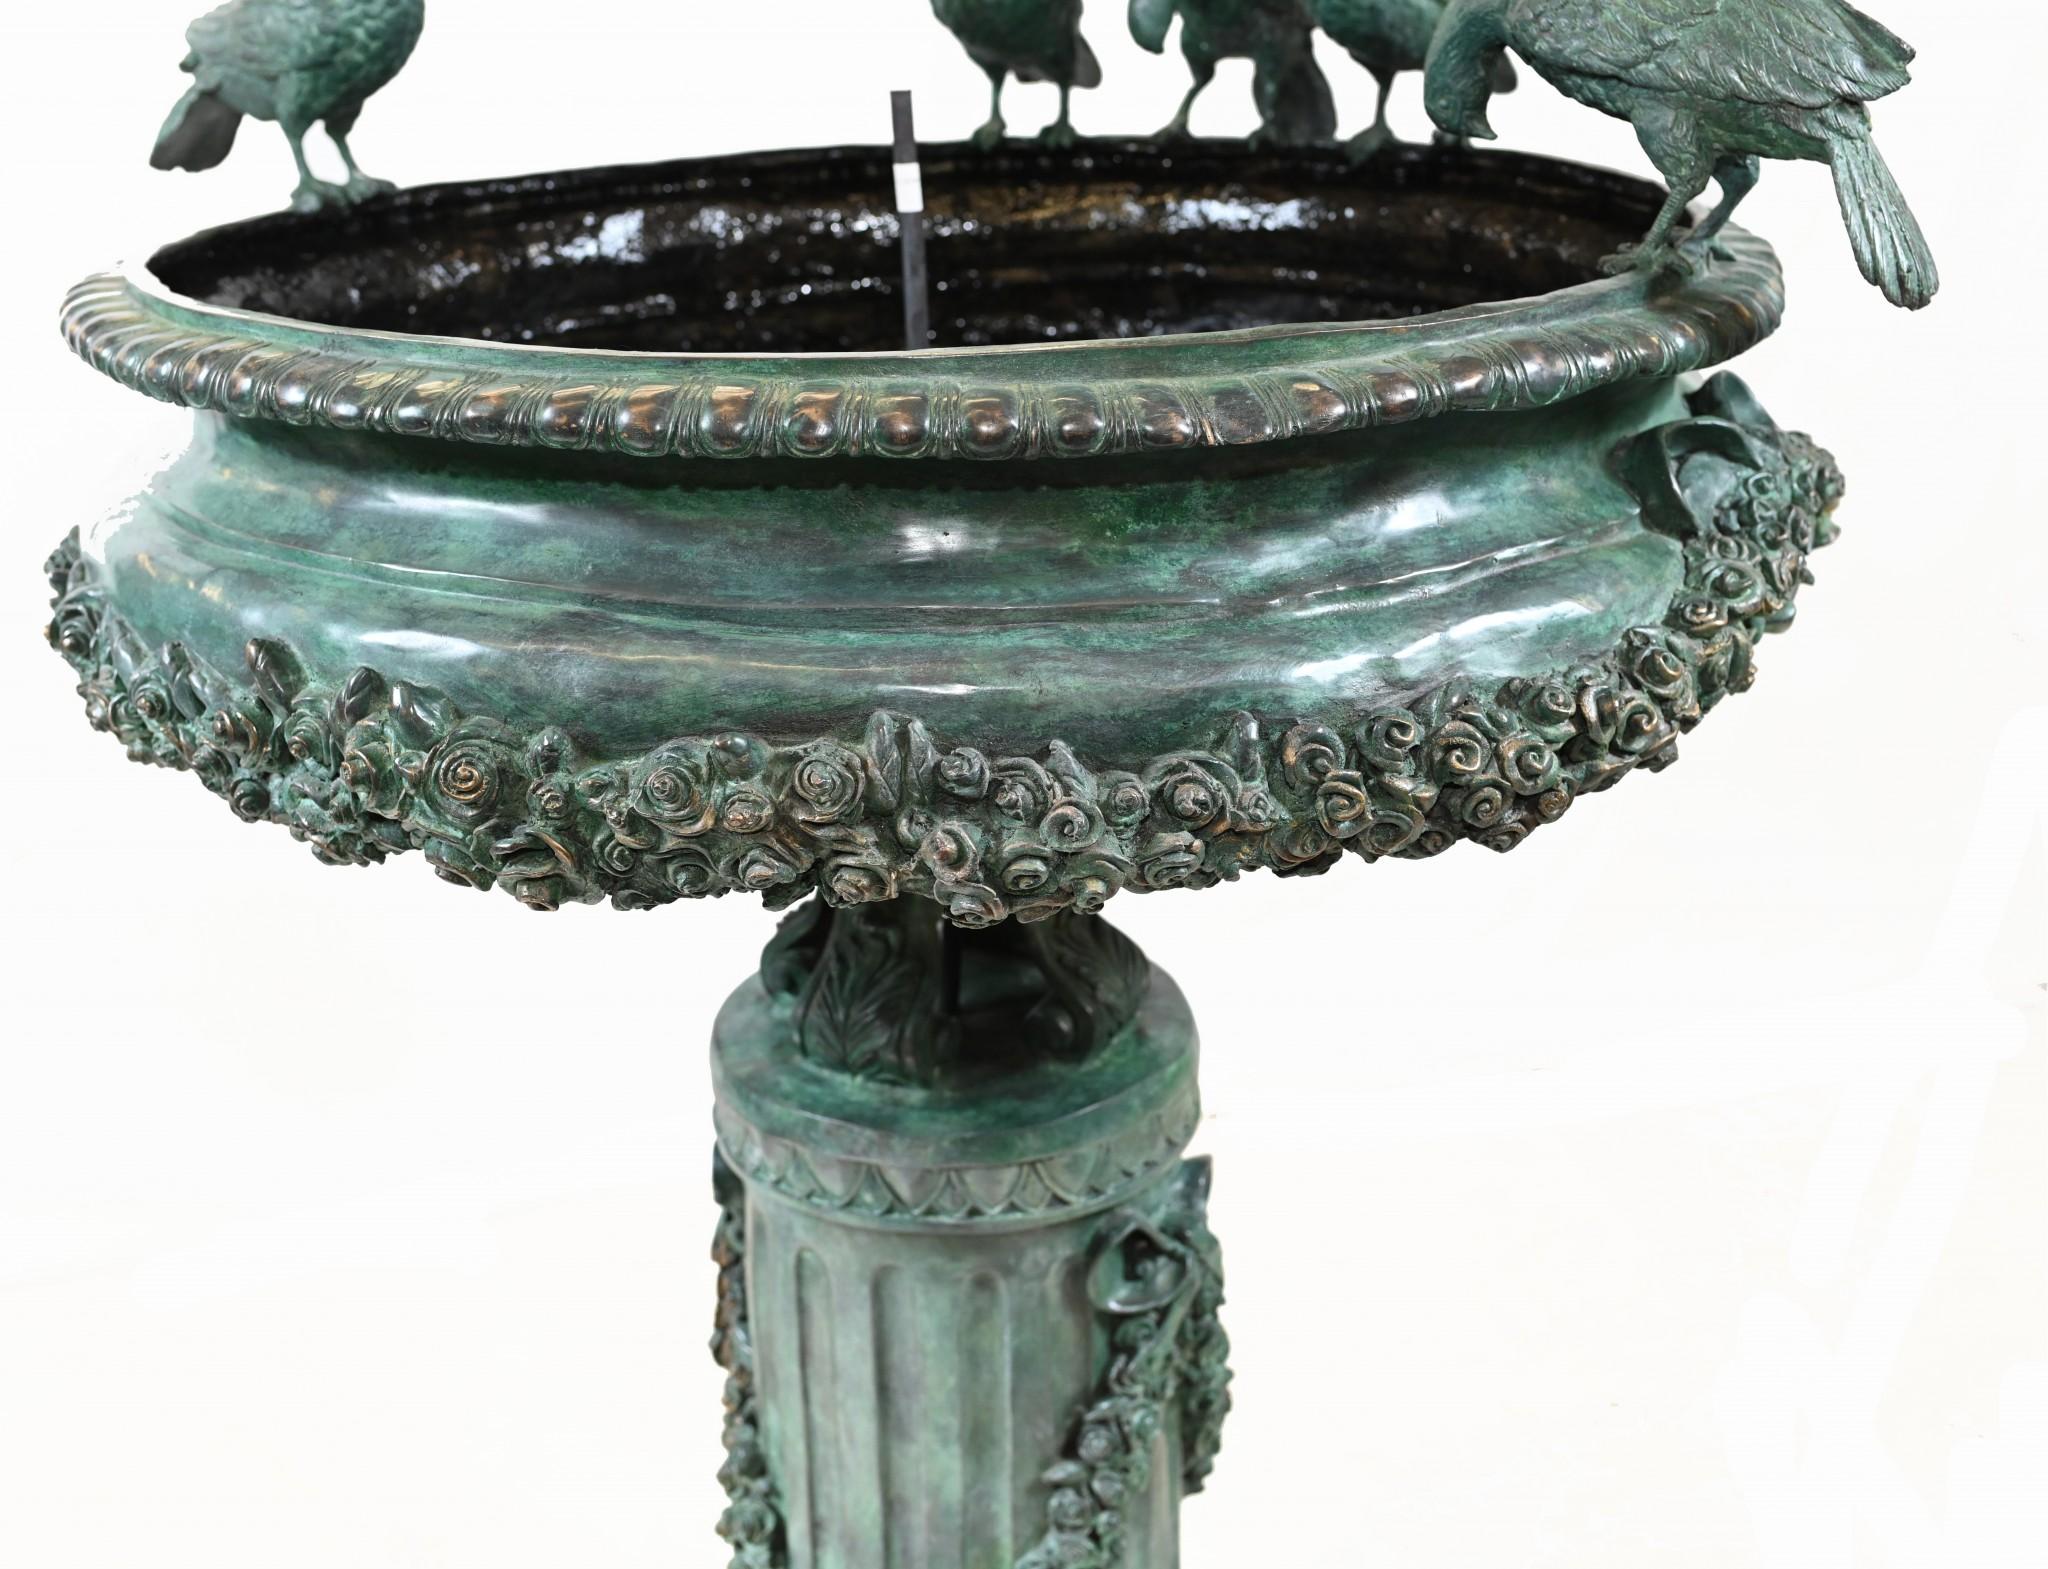 Wunderschöner großer italienischer Bronzebrunnen
Klassisches Aussehen, ergänzt durch die herrliche Patina in verdis gris
Die abgebildeten Vögel, die vom Rand der Schale trinken, sind wunderschön.
Klassische Vorhänge an der zentralen Säule sorgen für